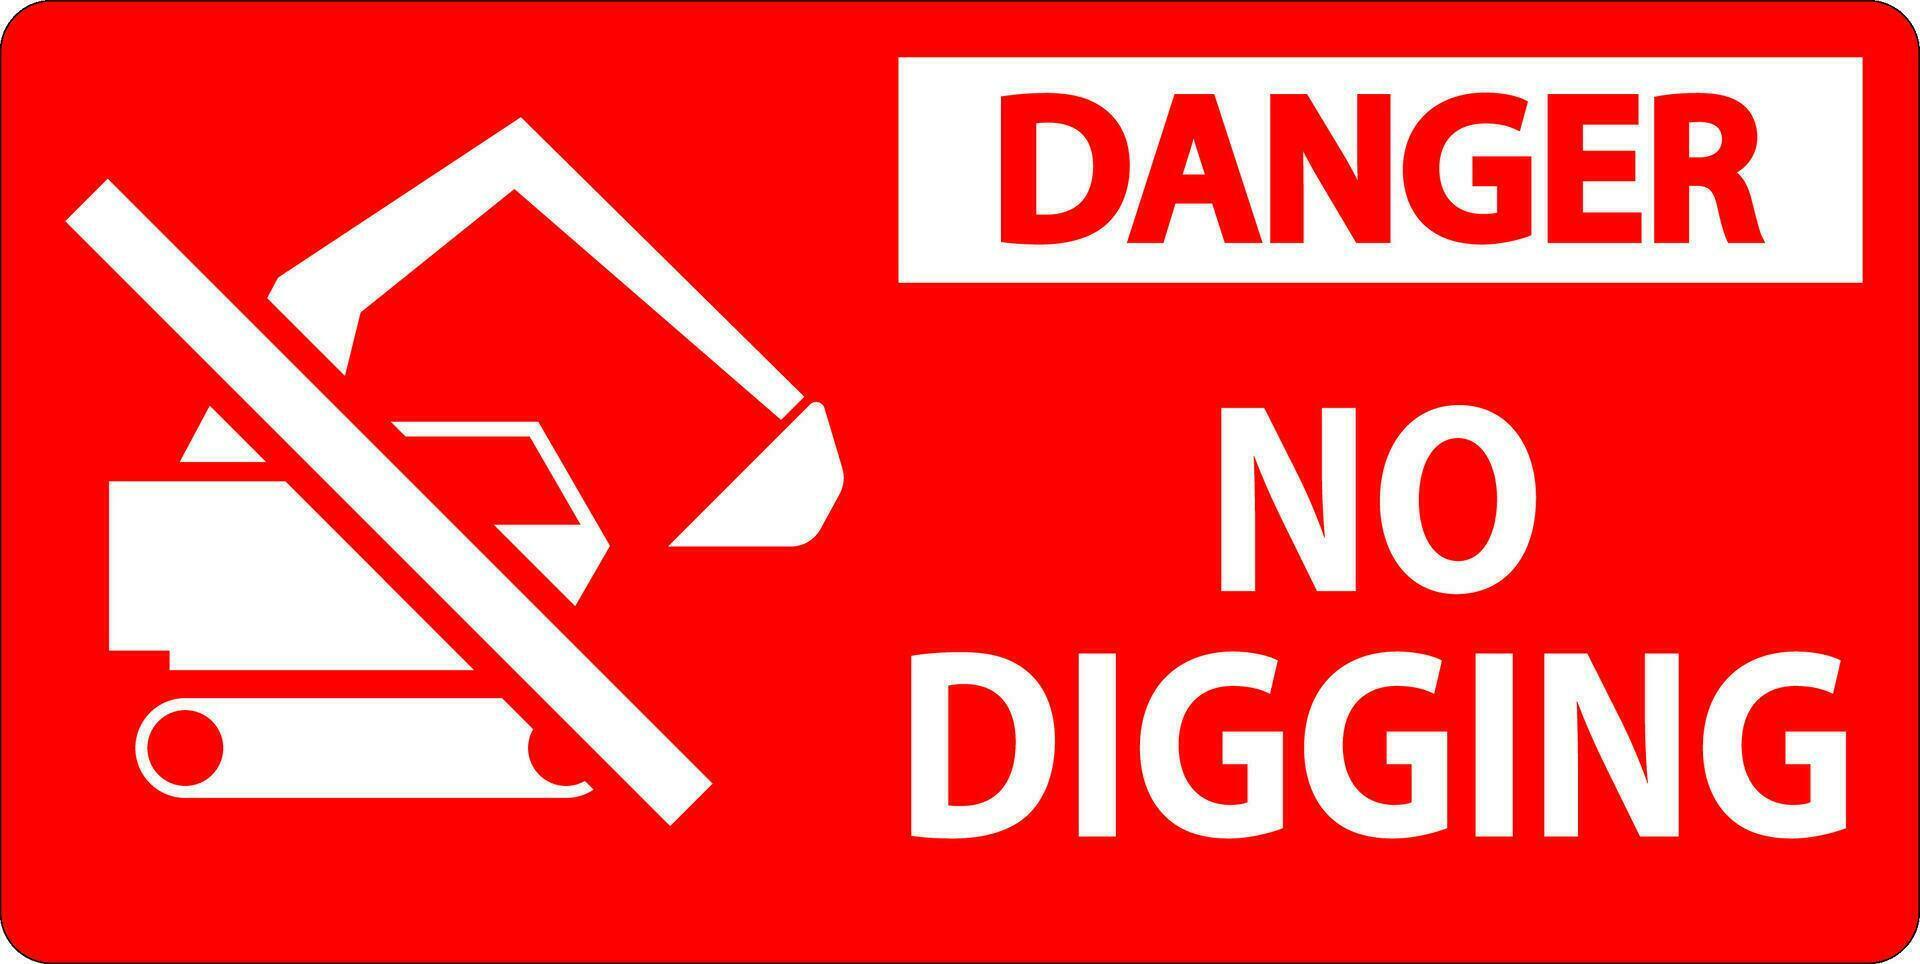 danger signe, non creusement signe vecteur